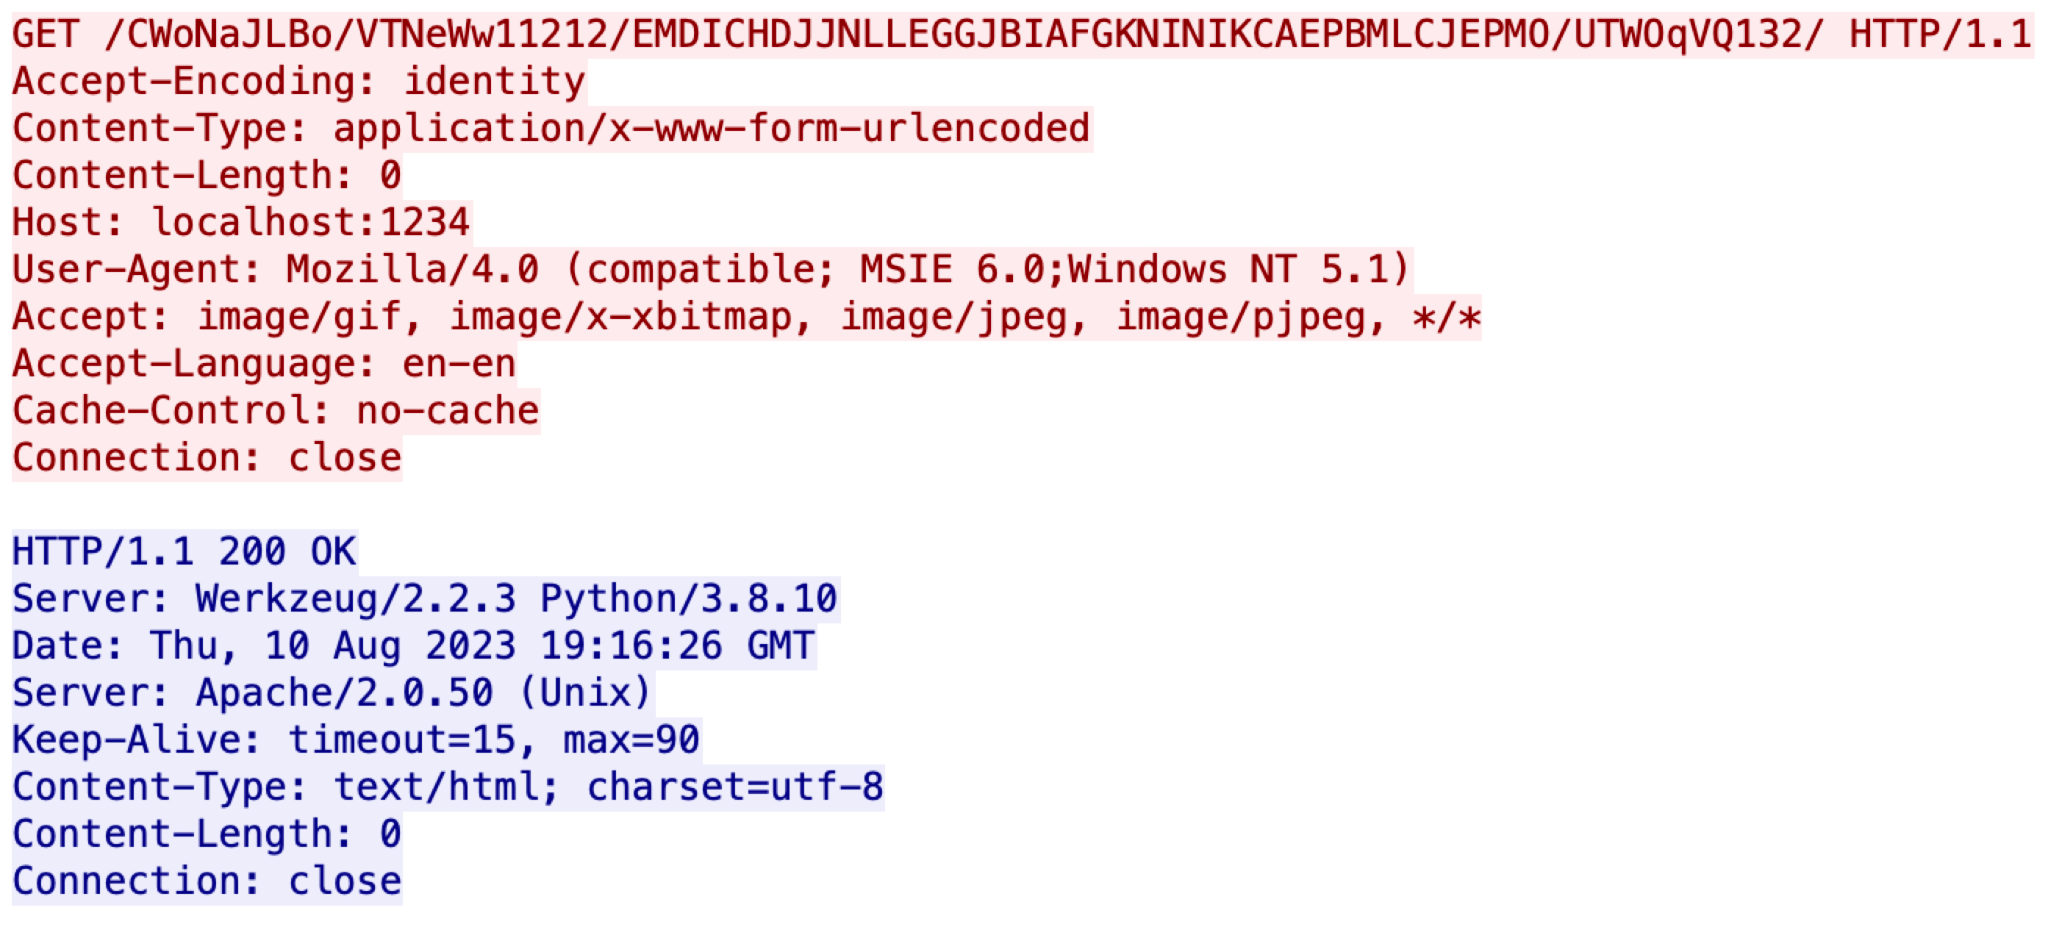 画像 3 は、2 つの別々のコード チャンクのスクリーンショットです。最初のものは赤で強調表示されています。2 番目は青で強調表示されています。これは、Malleable C2 プロファイルに基づいて Empire C2 が生成する HTTP トラフィックです。この情報には、サーバー、ユーザー エージェント、GET、日付などが含まれます。